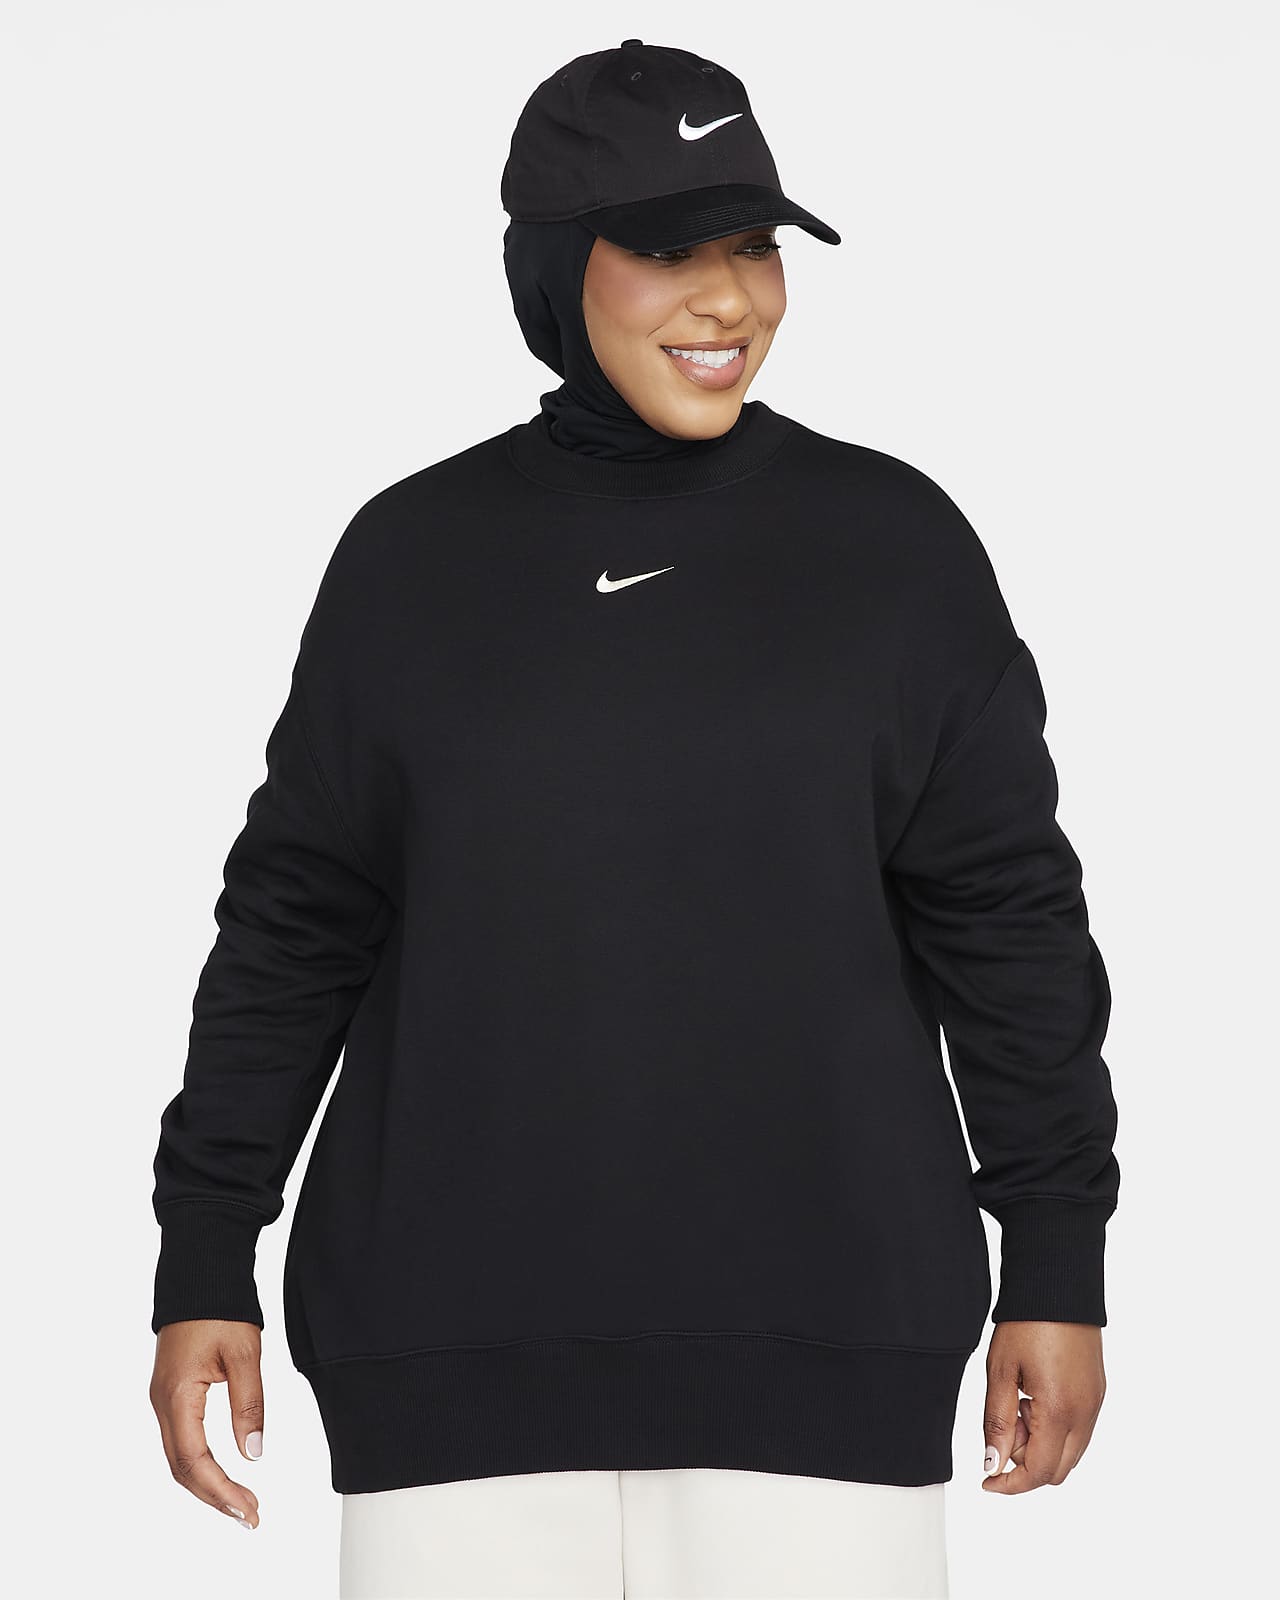 Nike Sportswear Phoenix Fleece Bol Kesimli Sıfır Yaka Kadın Sweatshirt'ü